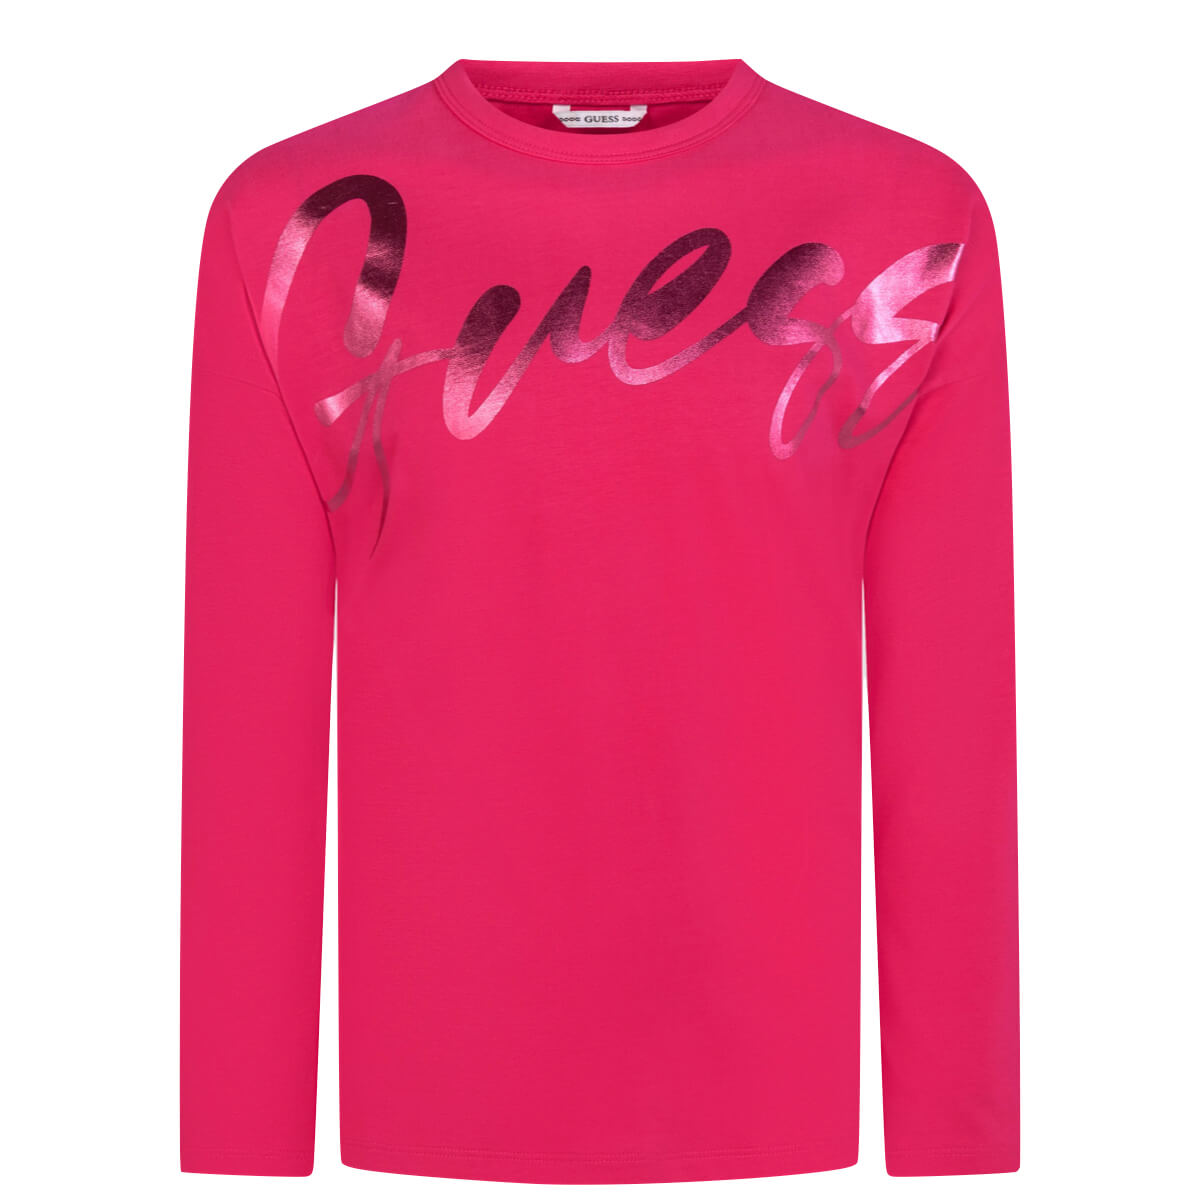 Guess Girls Pink LS T-Shirt Stylish